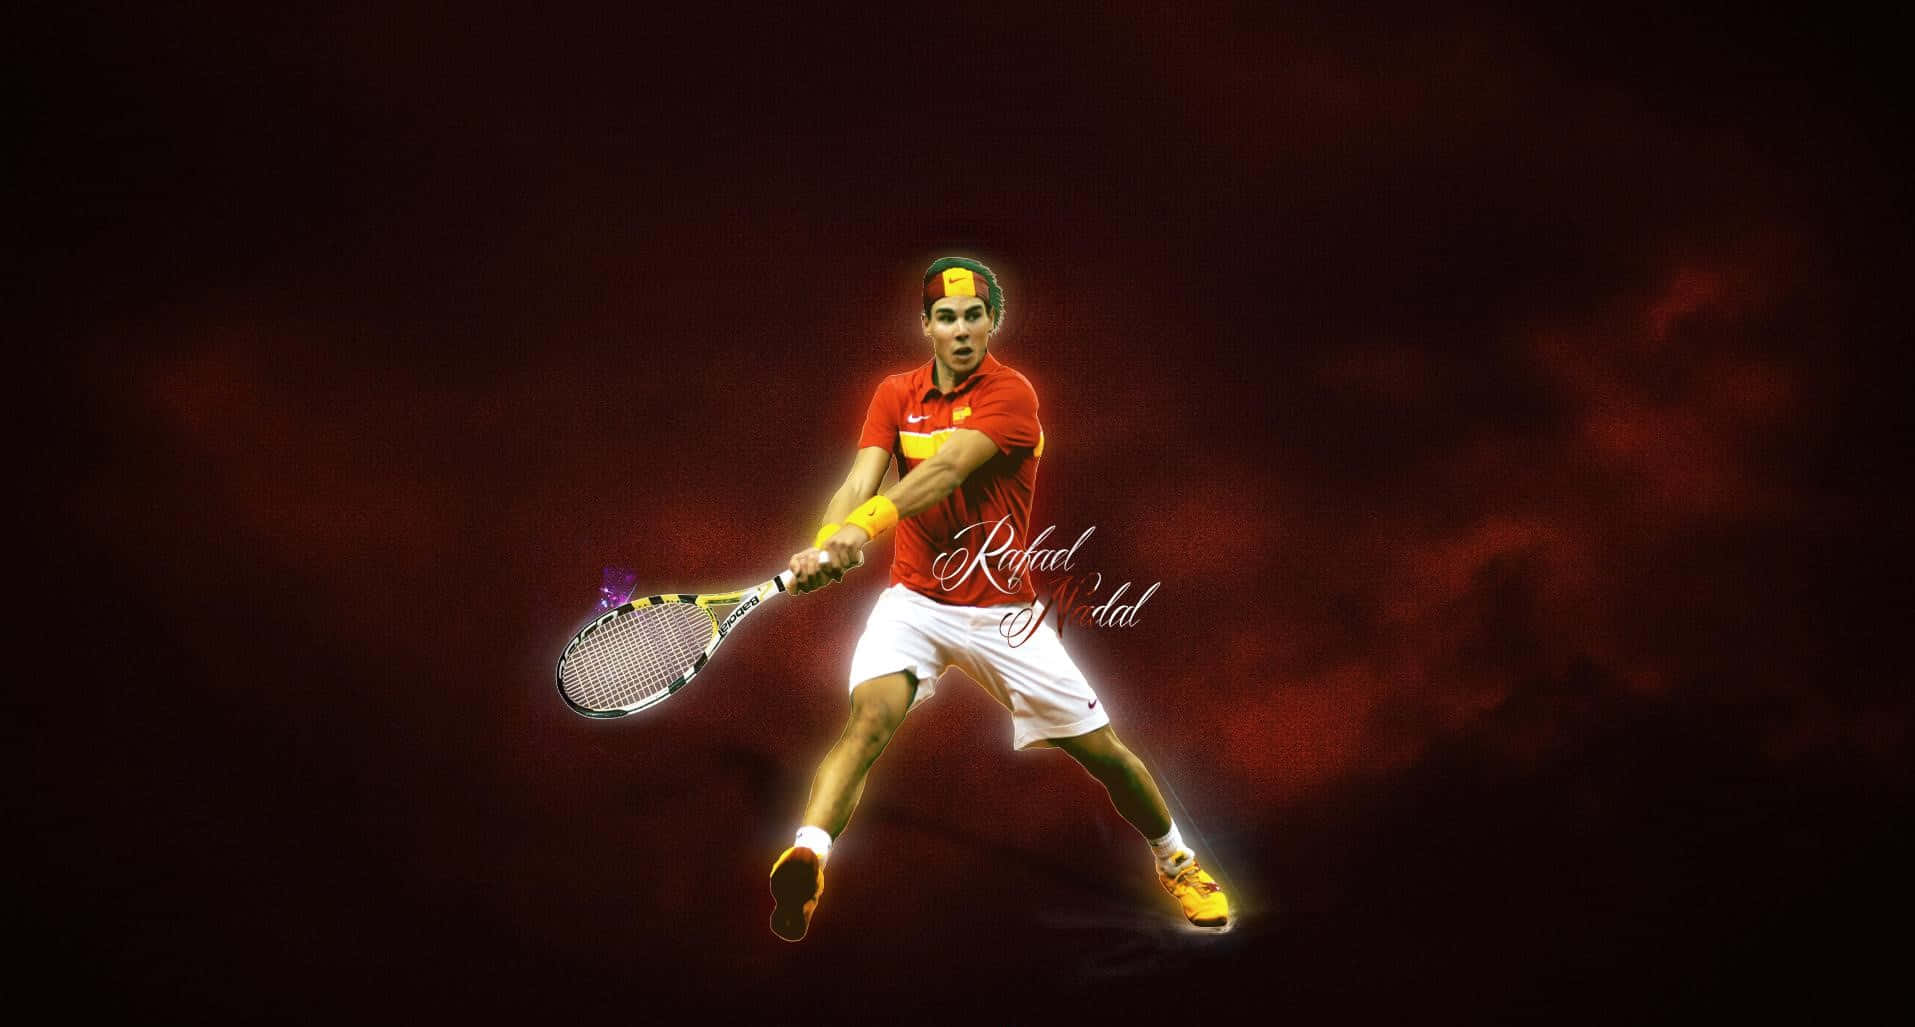 Hdhintergrundbild Des Spanischen Tennisspielers Rafael Nadal